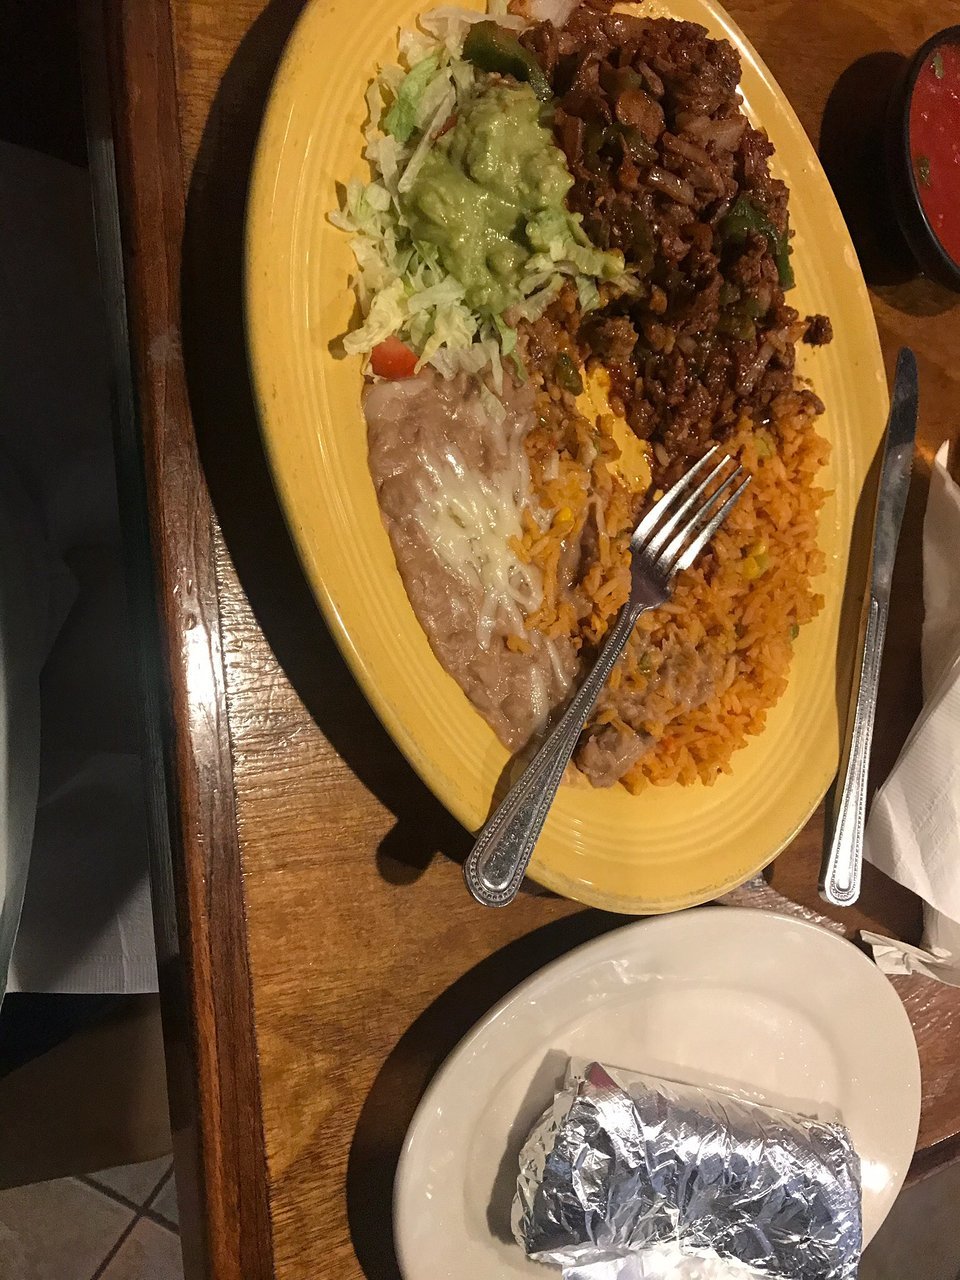 Pueblo Viejo Mexican Restaurant